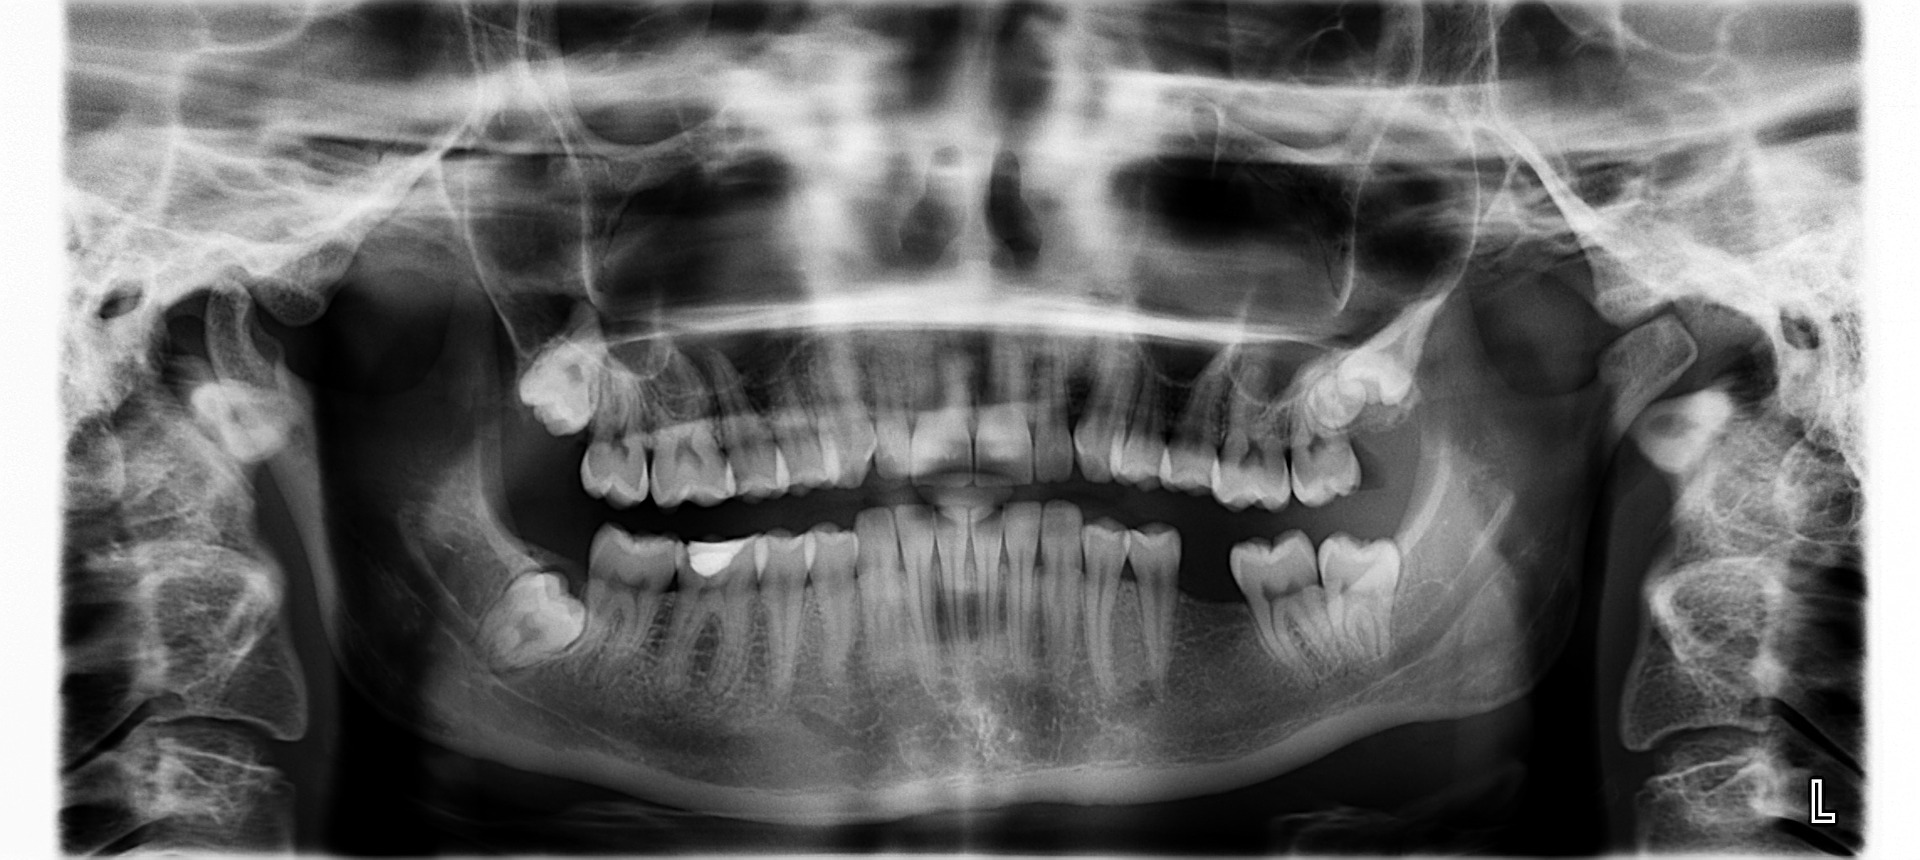 Jak wygląda RTG zęba?